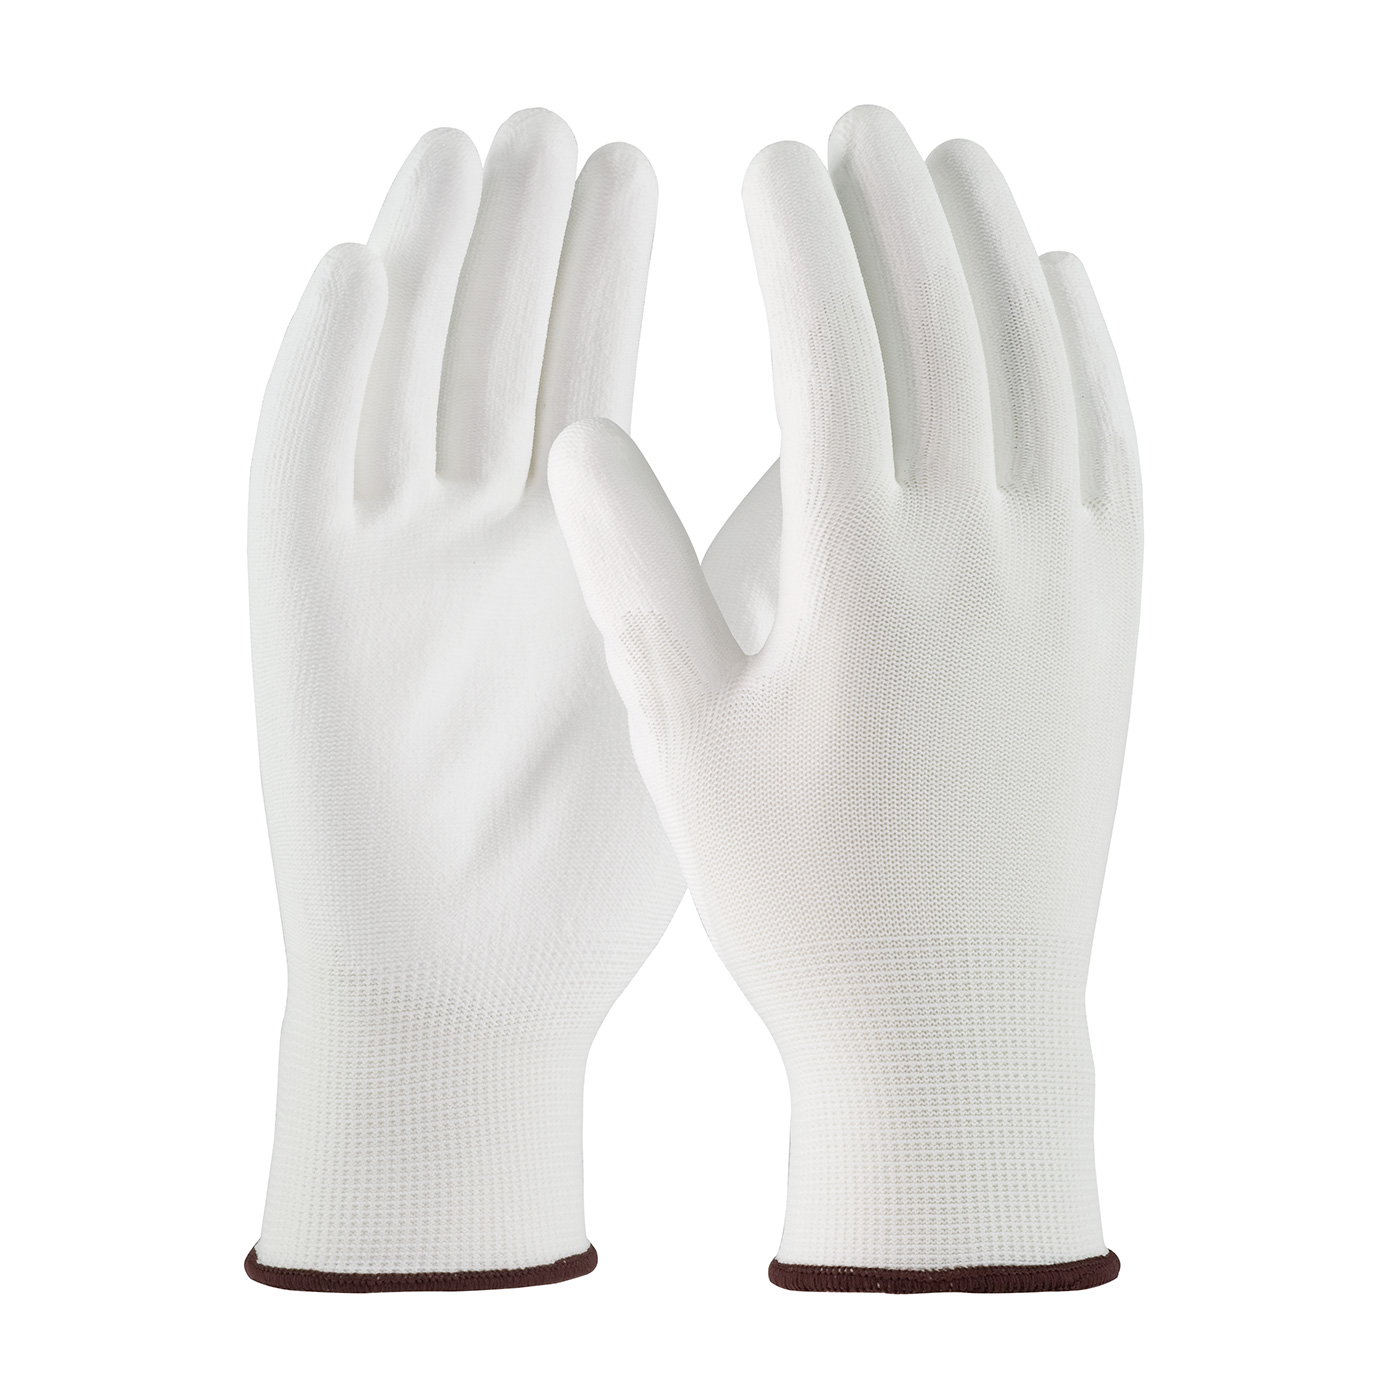 G-TEK ECONOMY WHITE PU PALM COATED - Polyurethane Coated Gloves